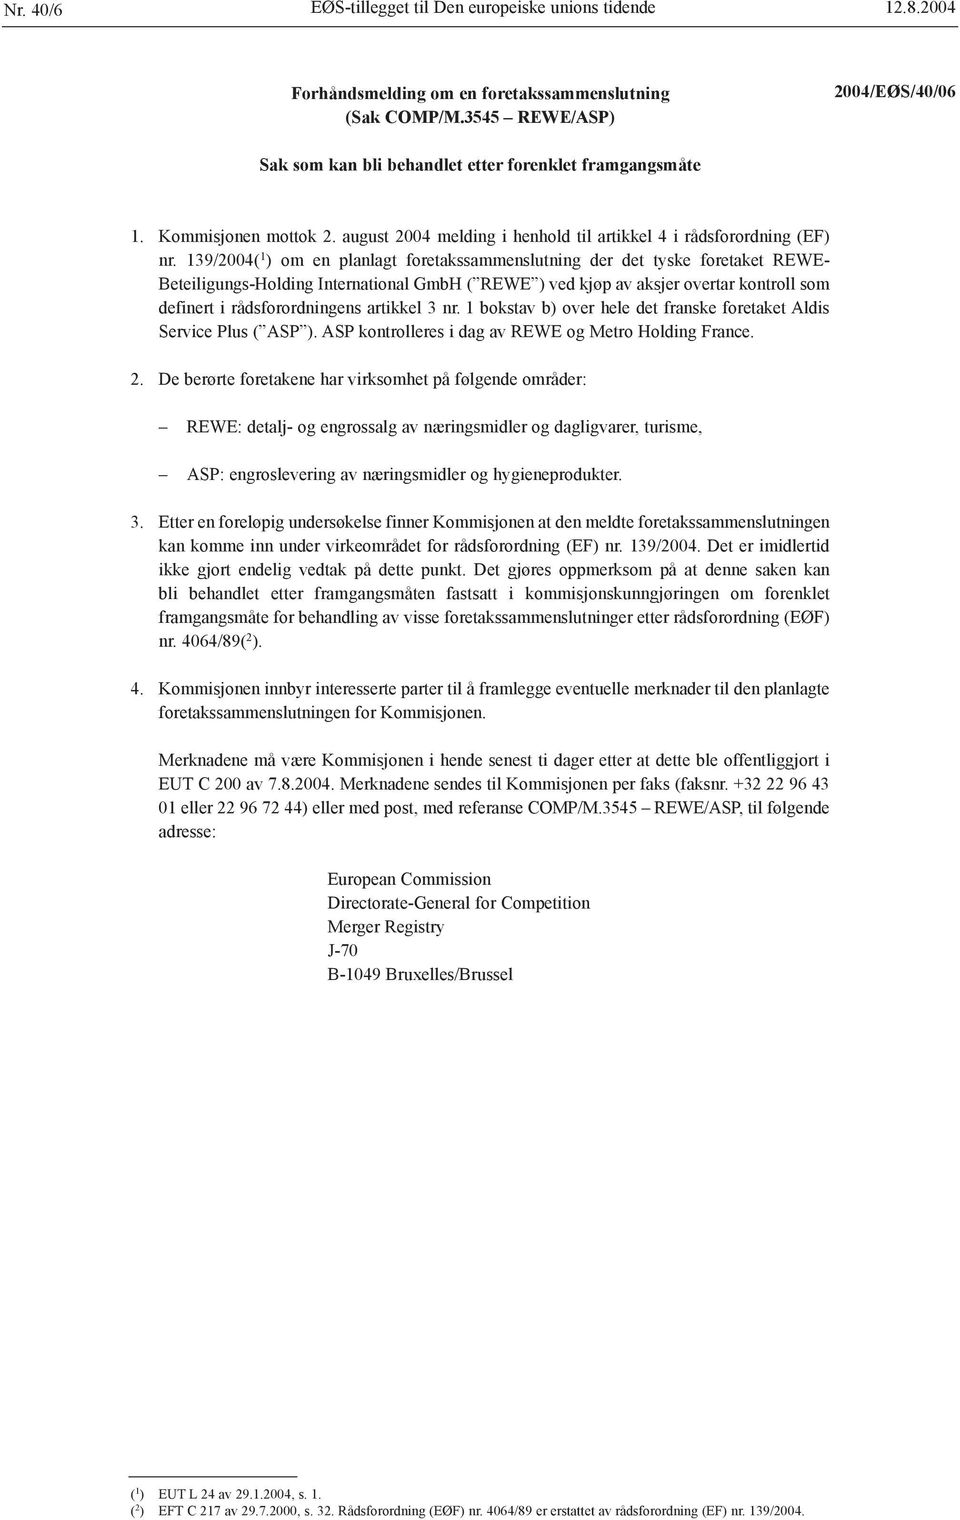 139/2004( 1 ) om en planlagt foretakssammenslutning der det tyske foretaket REWE- Beteiligungs-Holding International GmbH ( REWE ) ved kjøp av aksjer overtar kontroll som definert i rådsforordningens